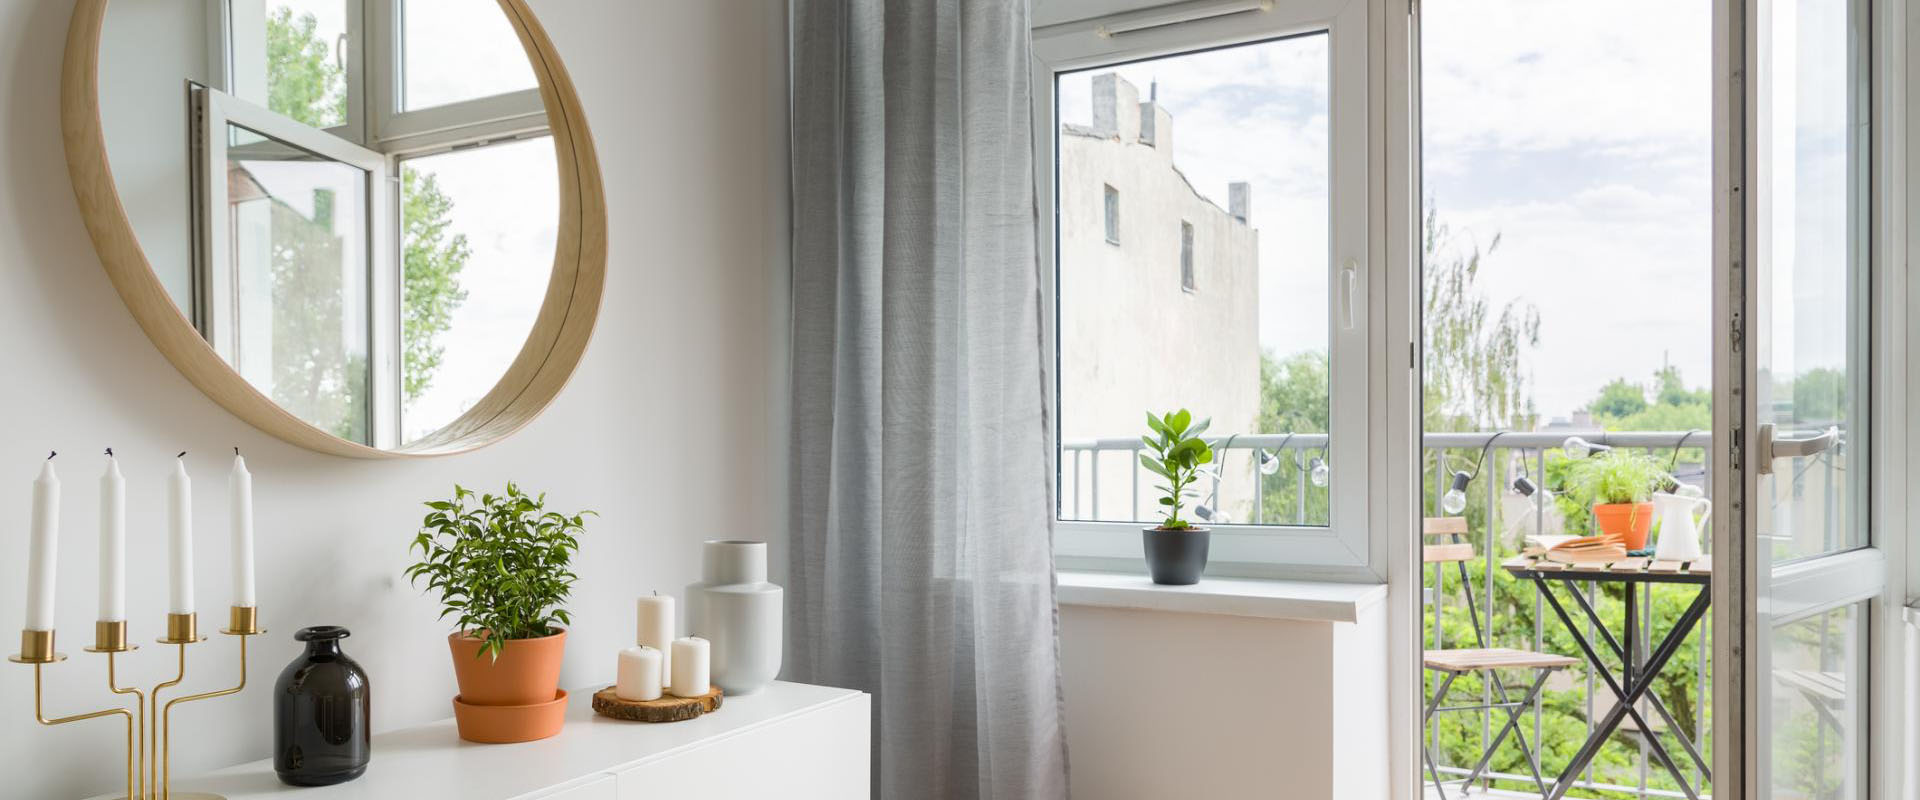 Окна ПВХ - идеальное решение для вашего дома